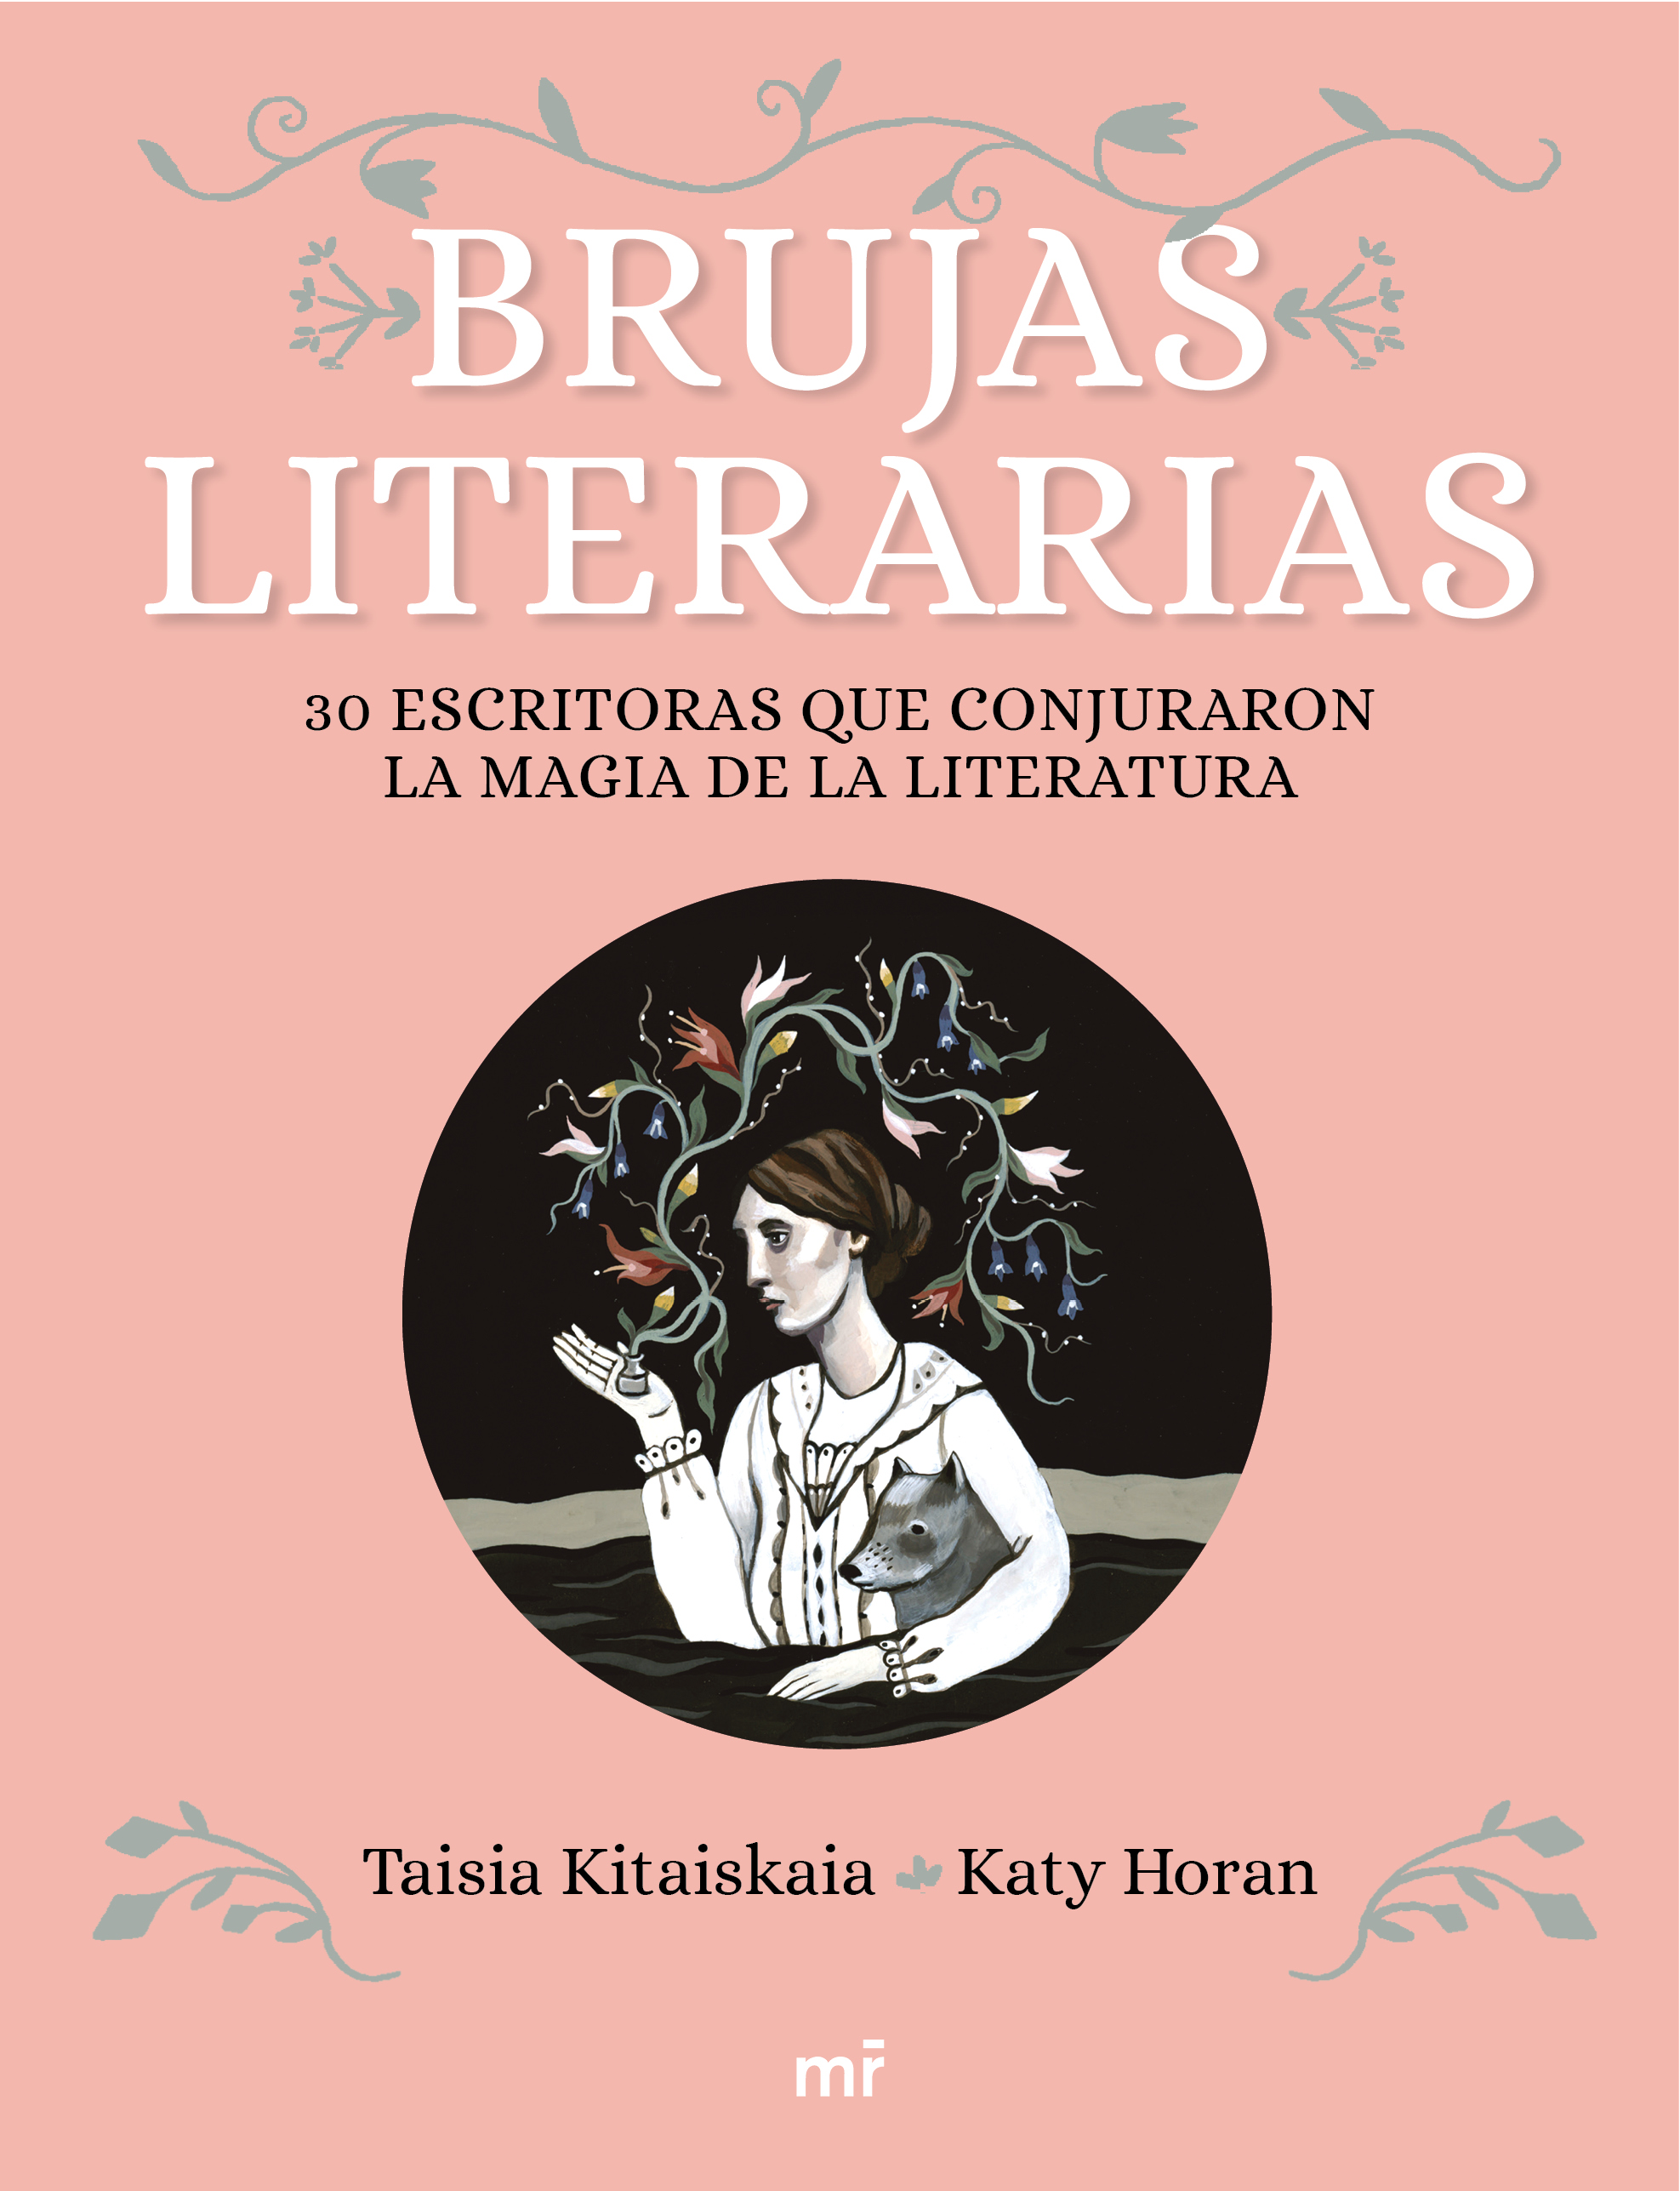 Brujas Literarias: Spain